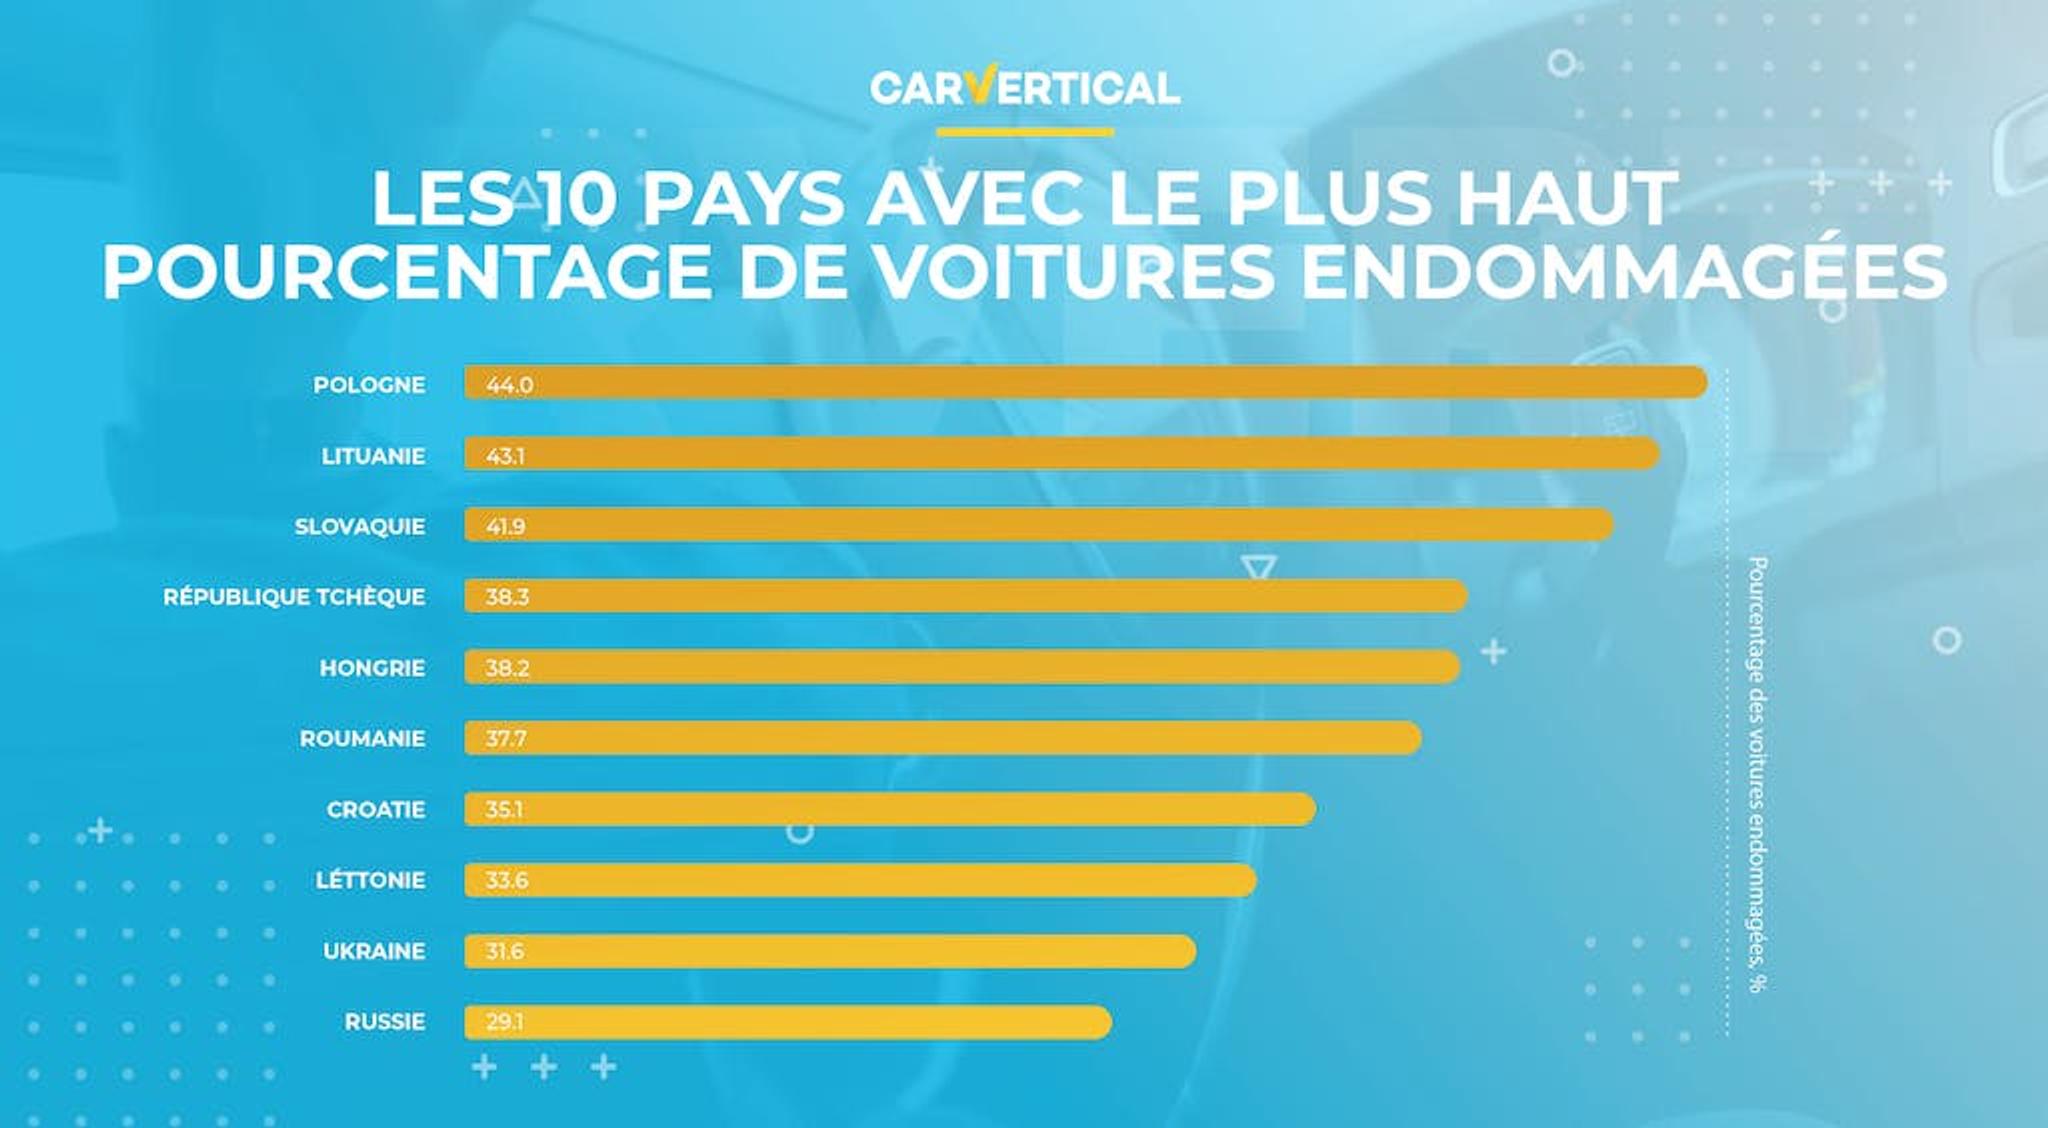 Les 10 pays avec le plus haut pourcentage de voitures endommagees